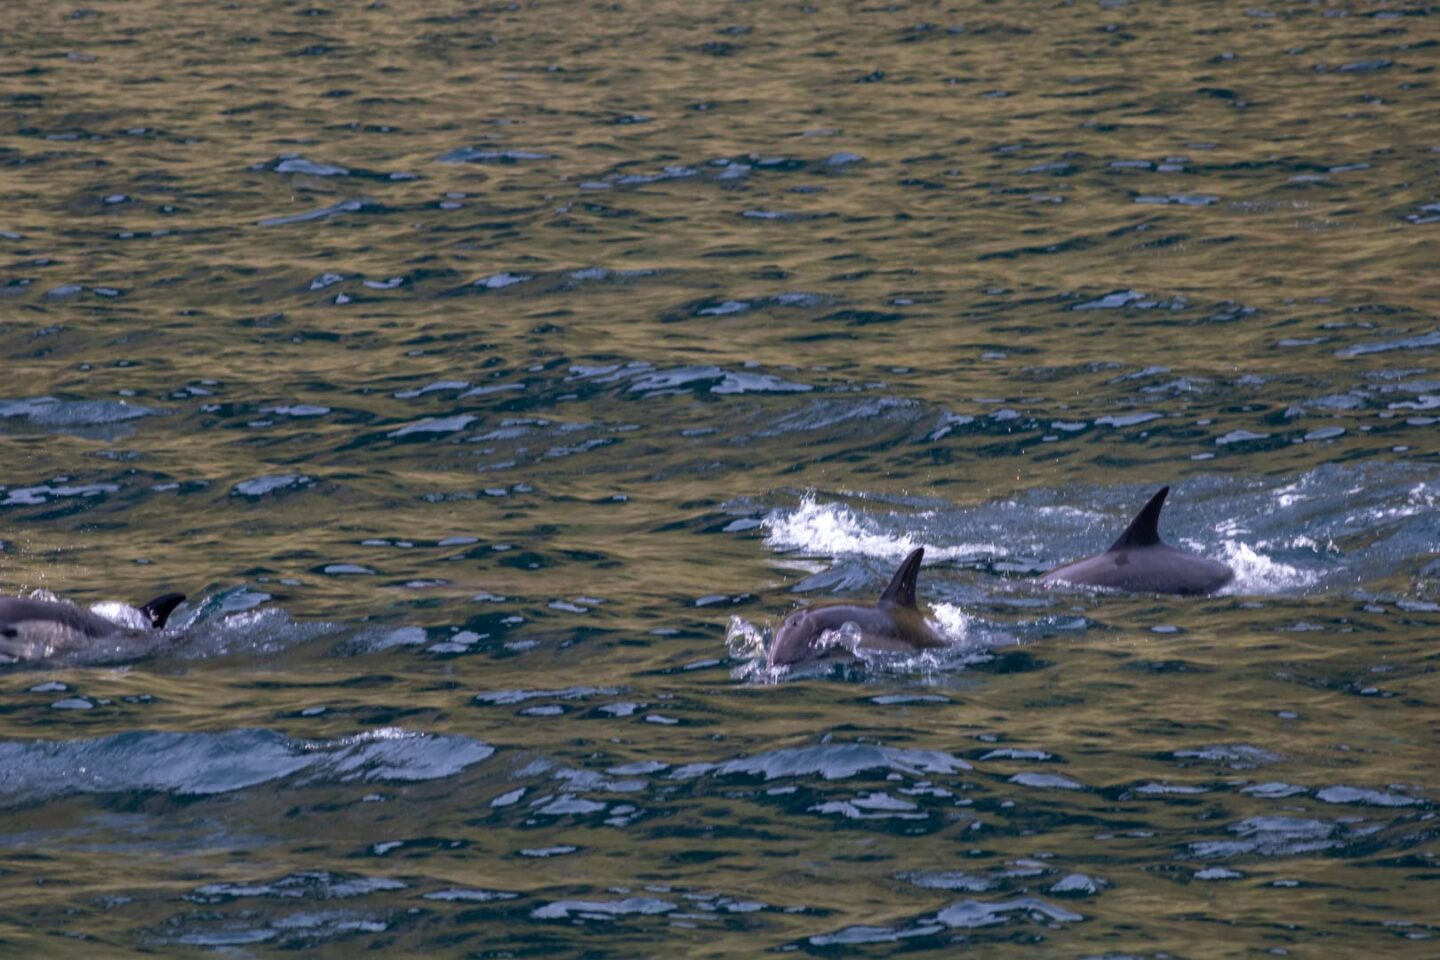 Dolphins in Elgol, Isle of Skye